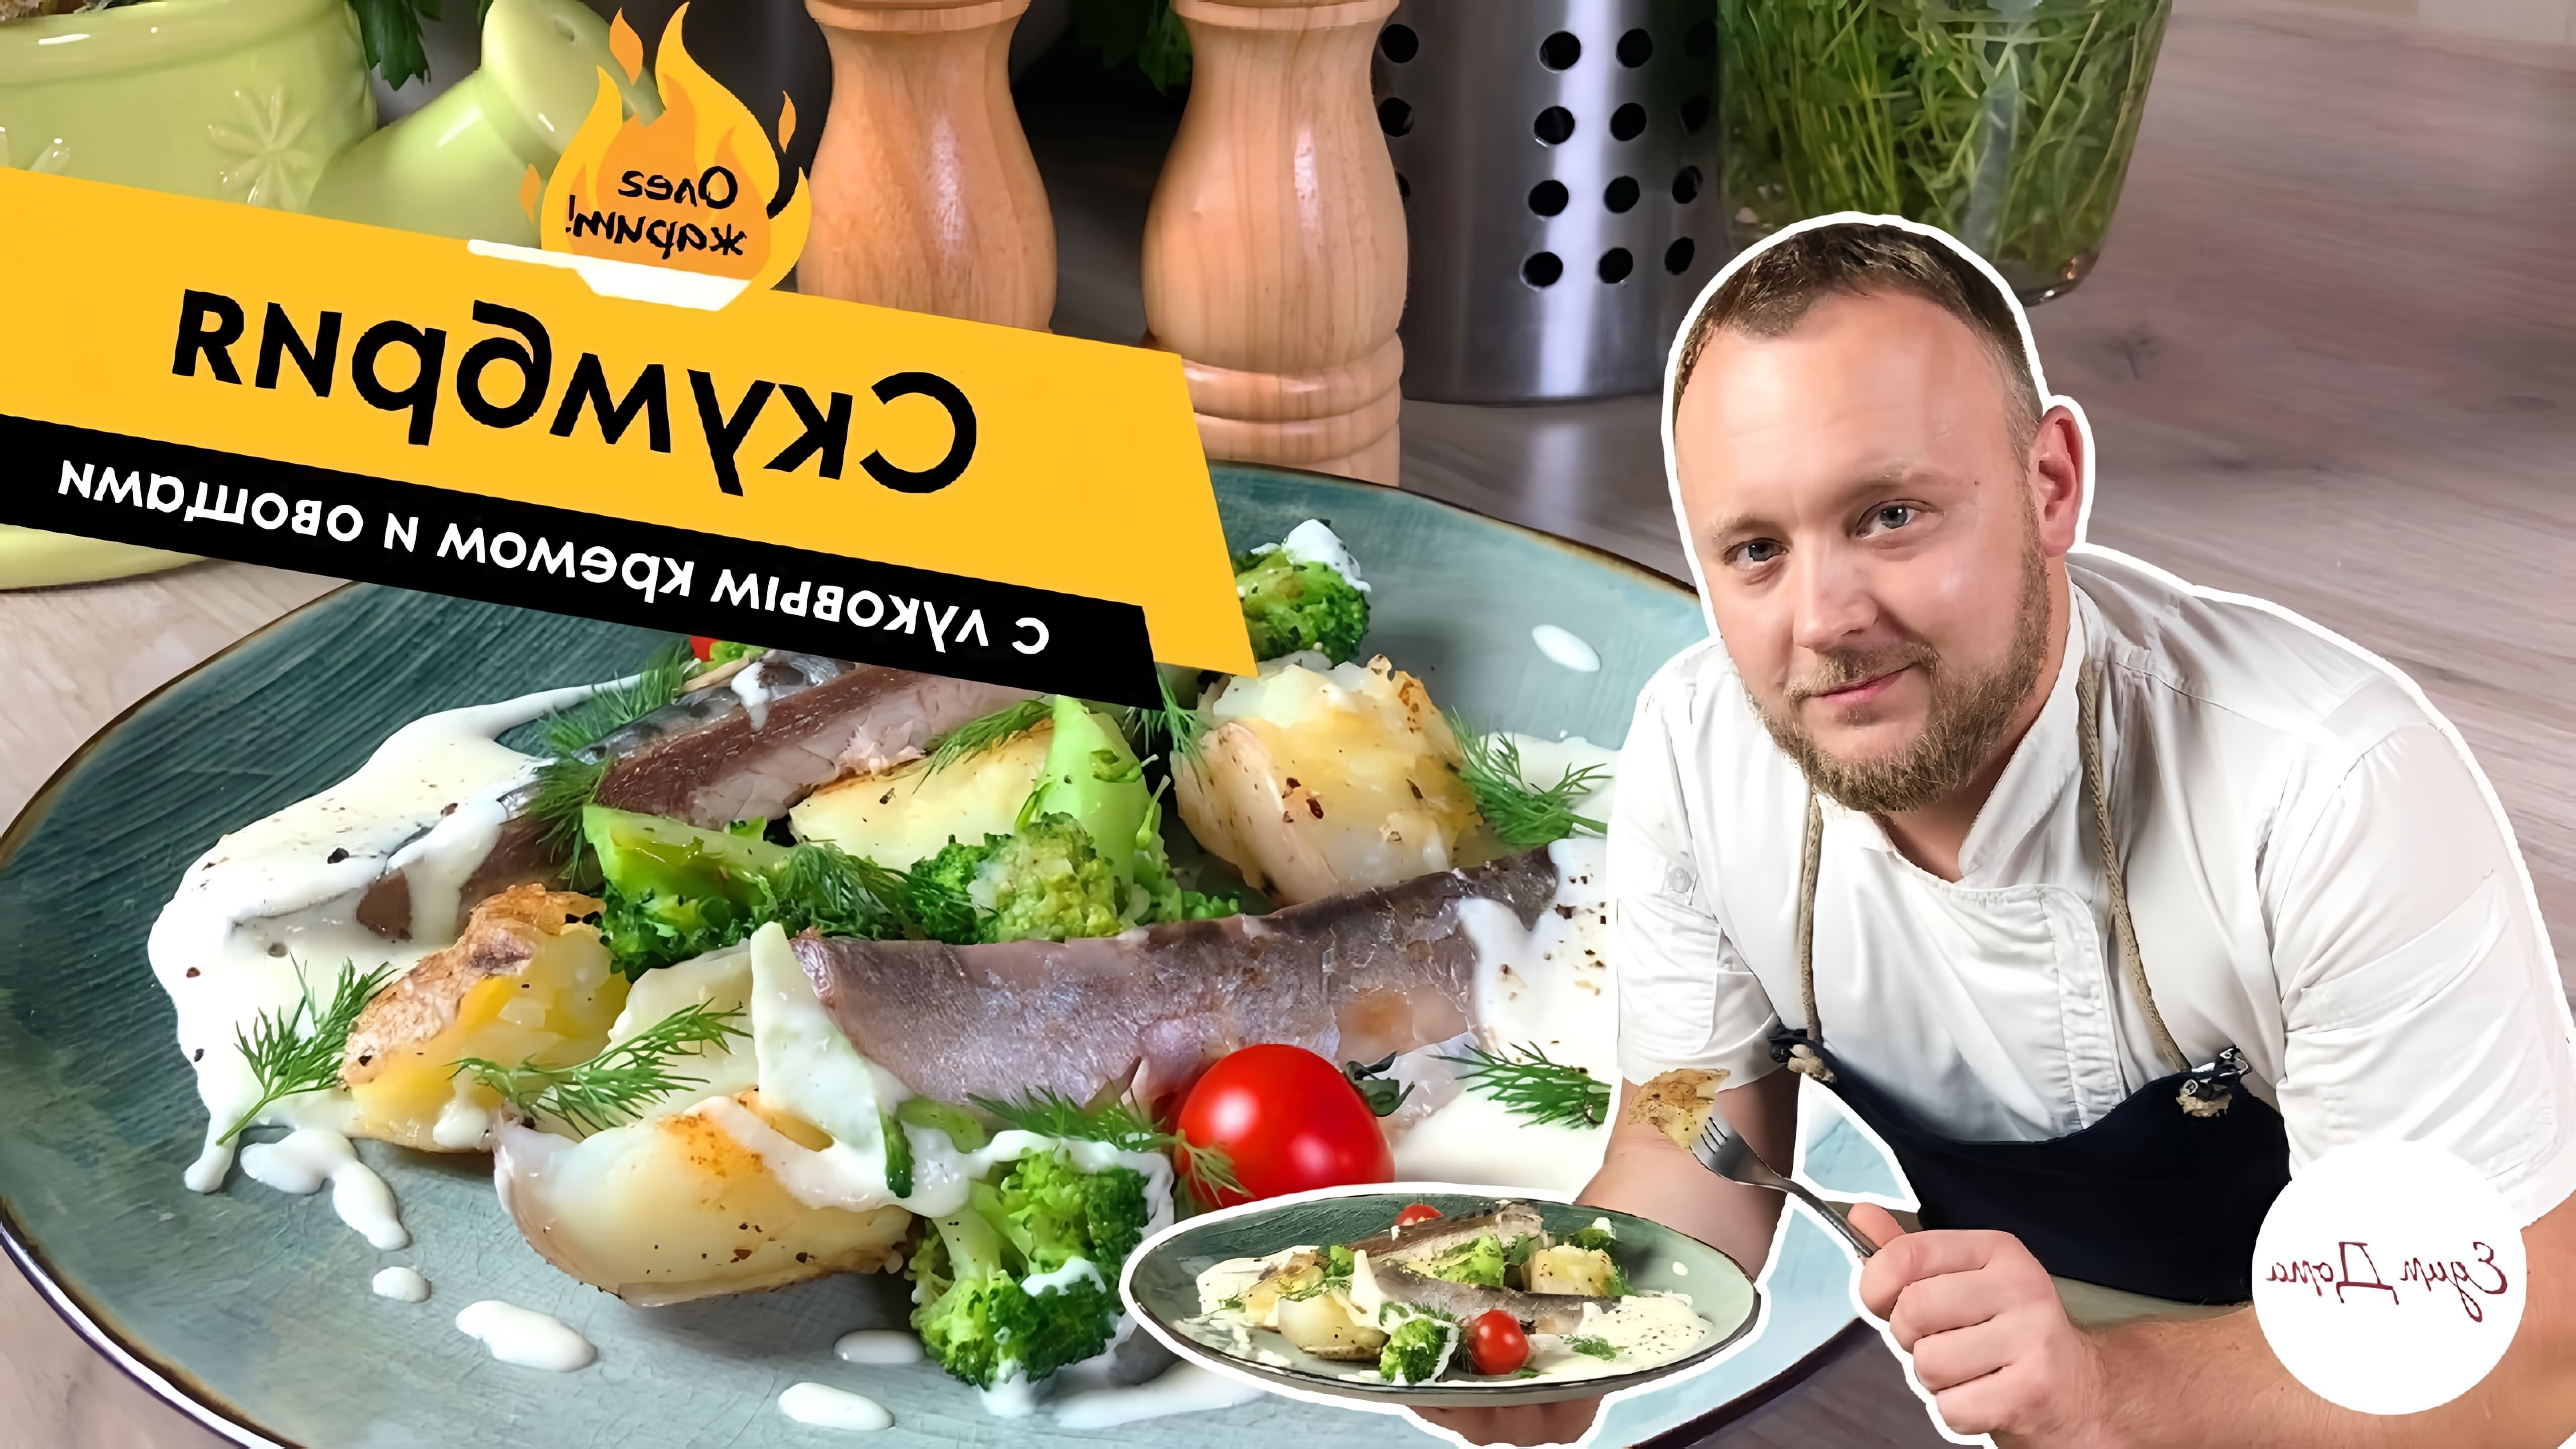 В этом видео Олег Томилин, известный кулинар, показывает, как приготовить скумбрию с луковым кремом и овощами